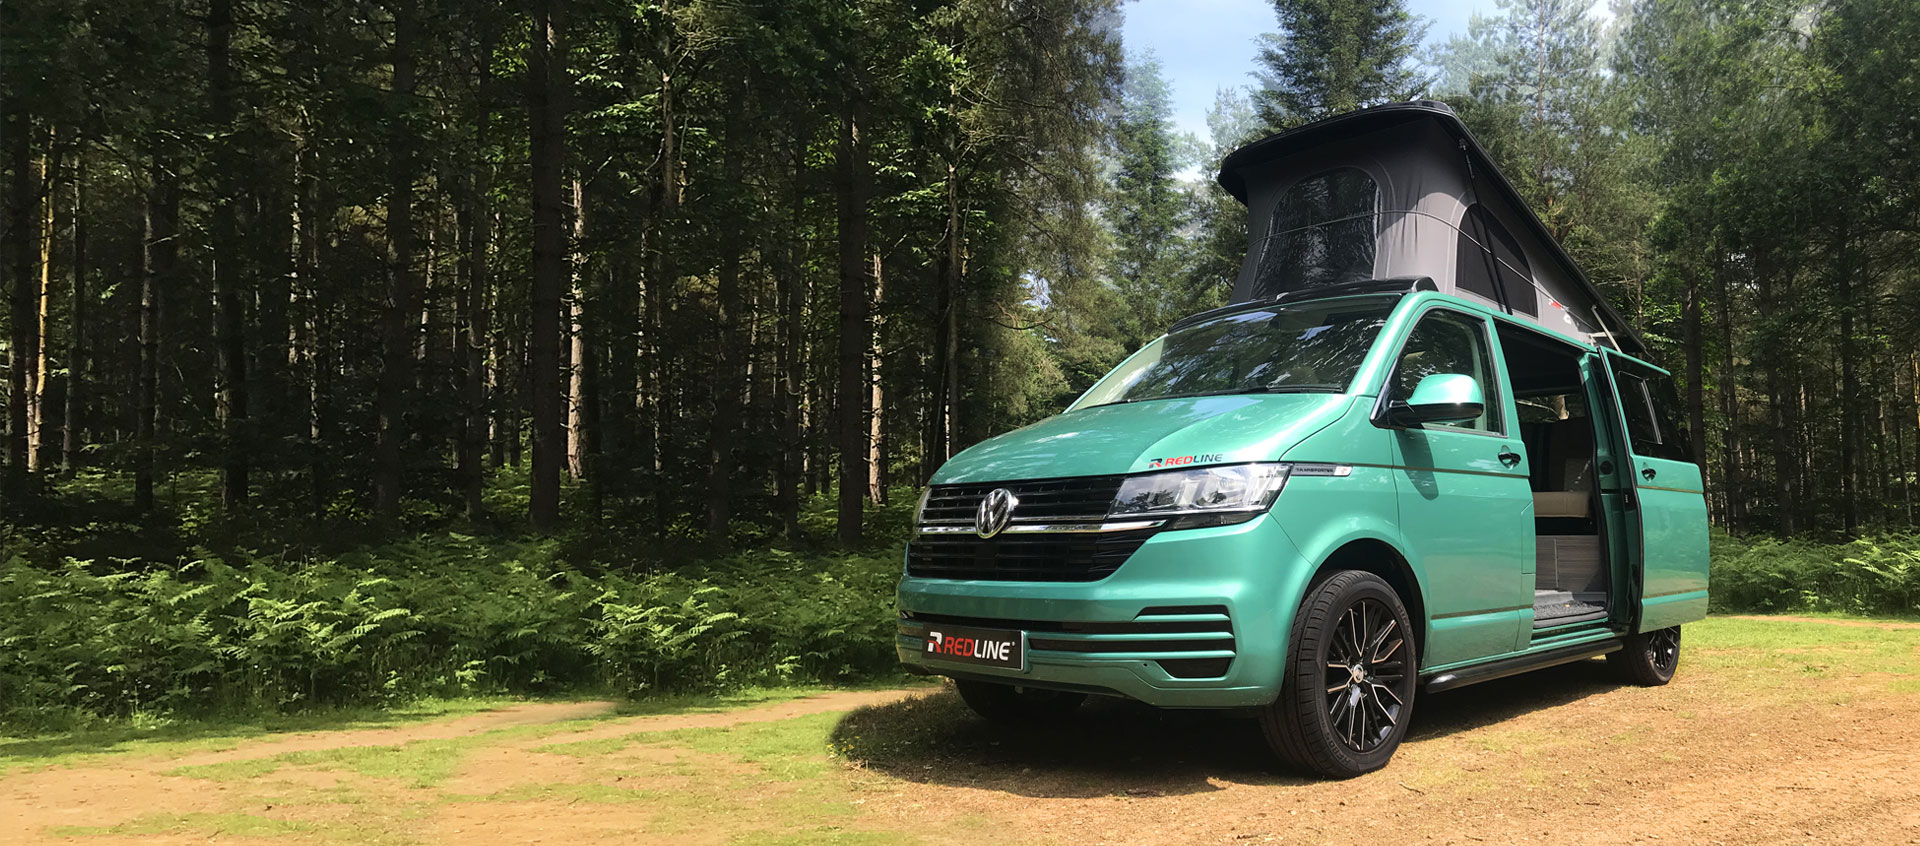 VW Redline Campervans from Venture